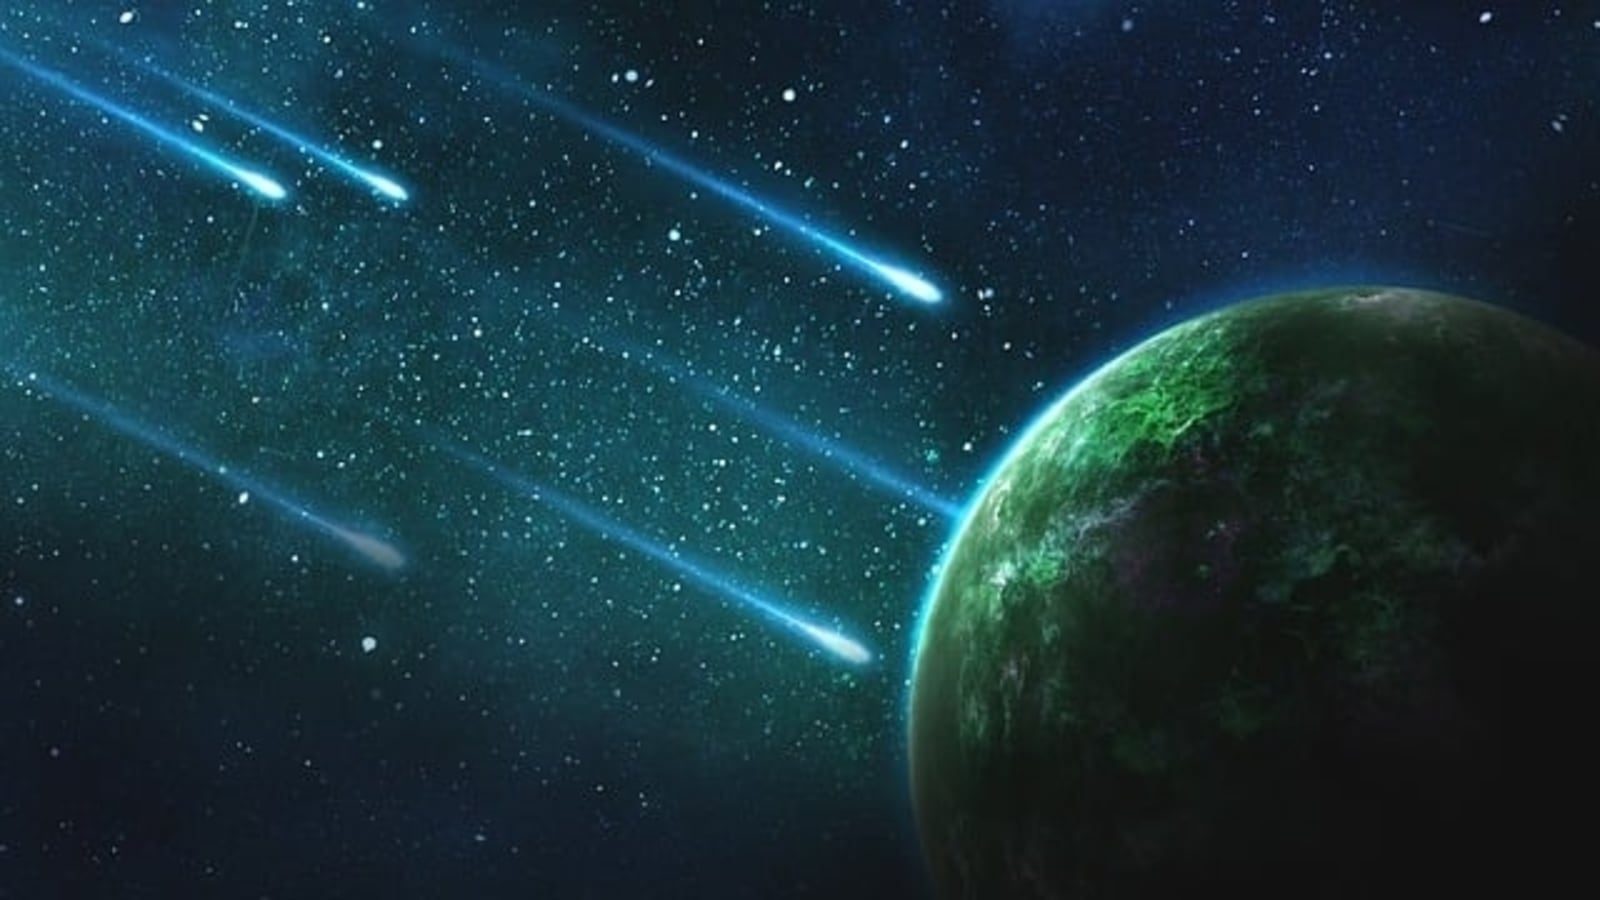 Потенциально опасный астероид высотой 1500 футов несется к Земле с угрожающей скоростью!